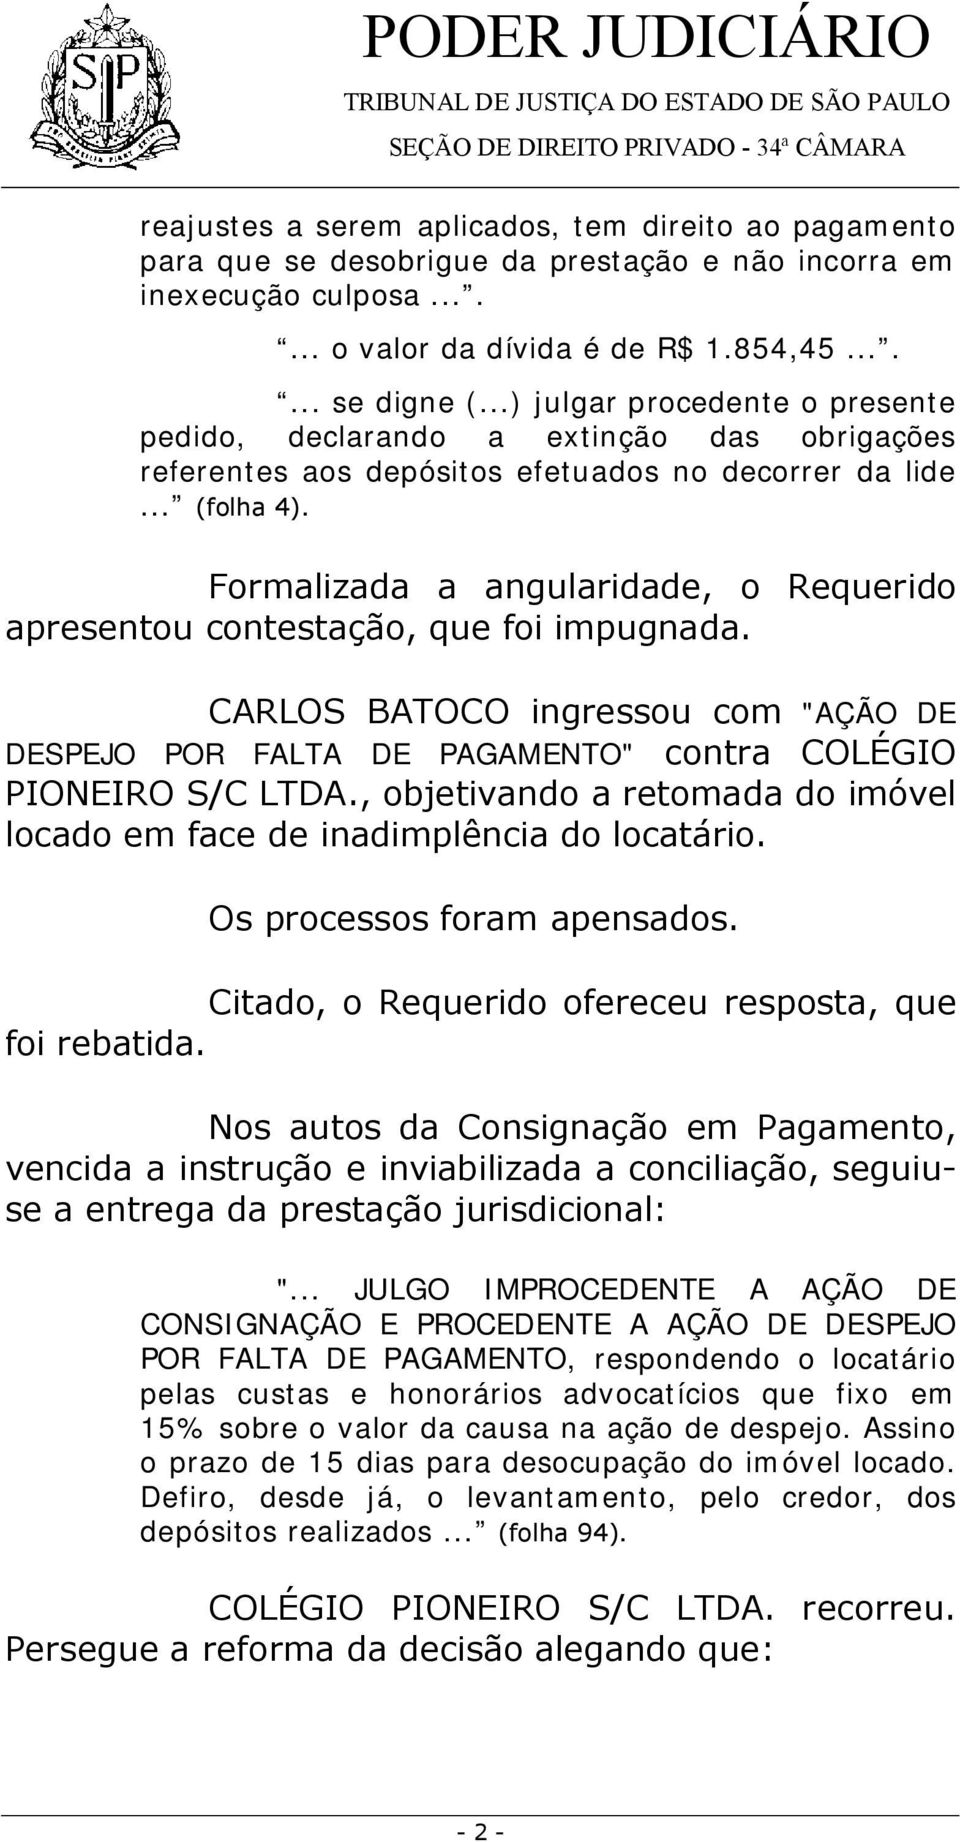 Formalizada a angularidade, o Requerido apresentou contestação, que foi impugnada. CARLOS BATOCO ingressou com "AÇÃO DE DESPEJO POR FALTA DE PAGAMENTO" contra COLÉGIO PIONEIRO S/C LTDA.